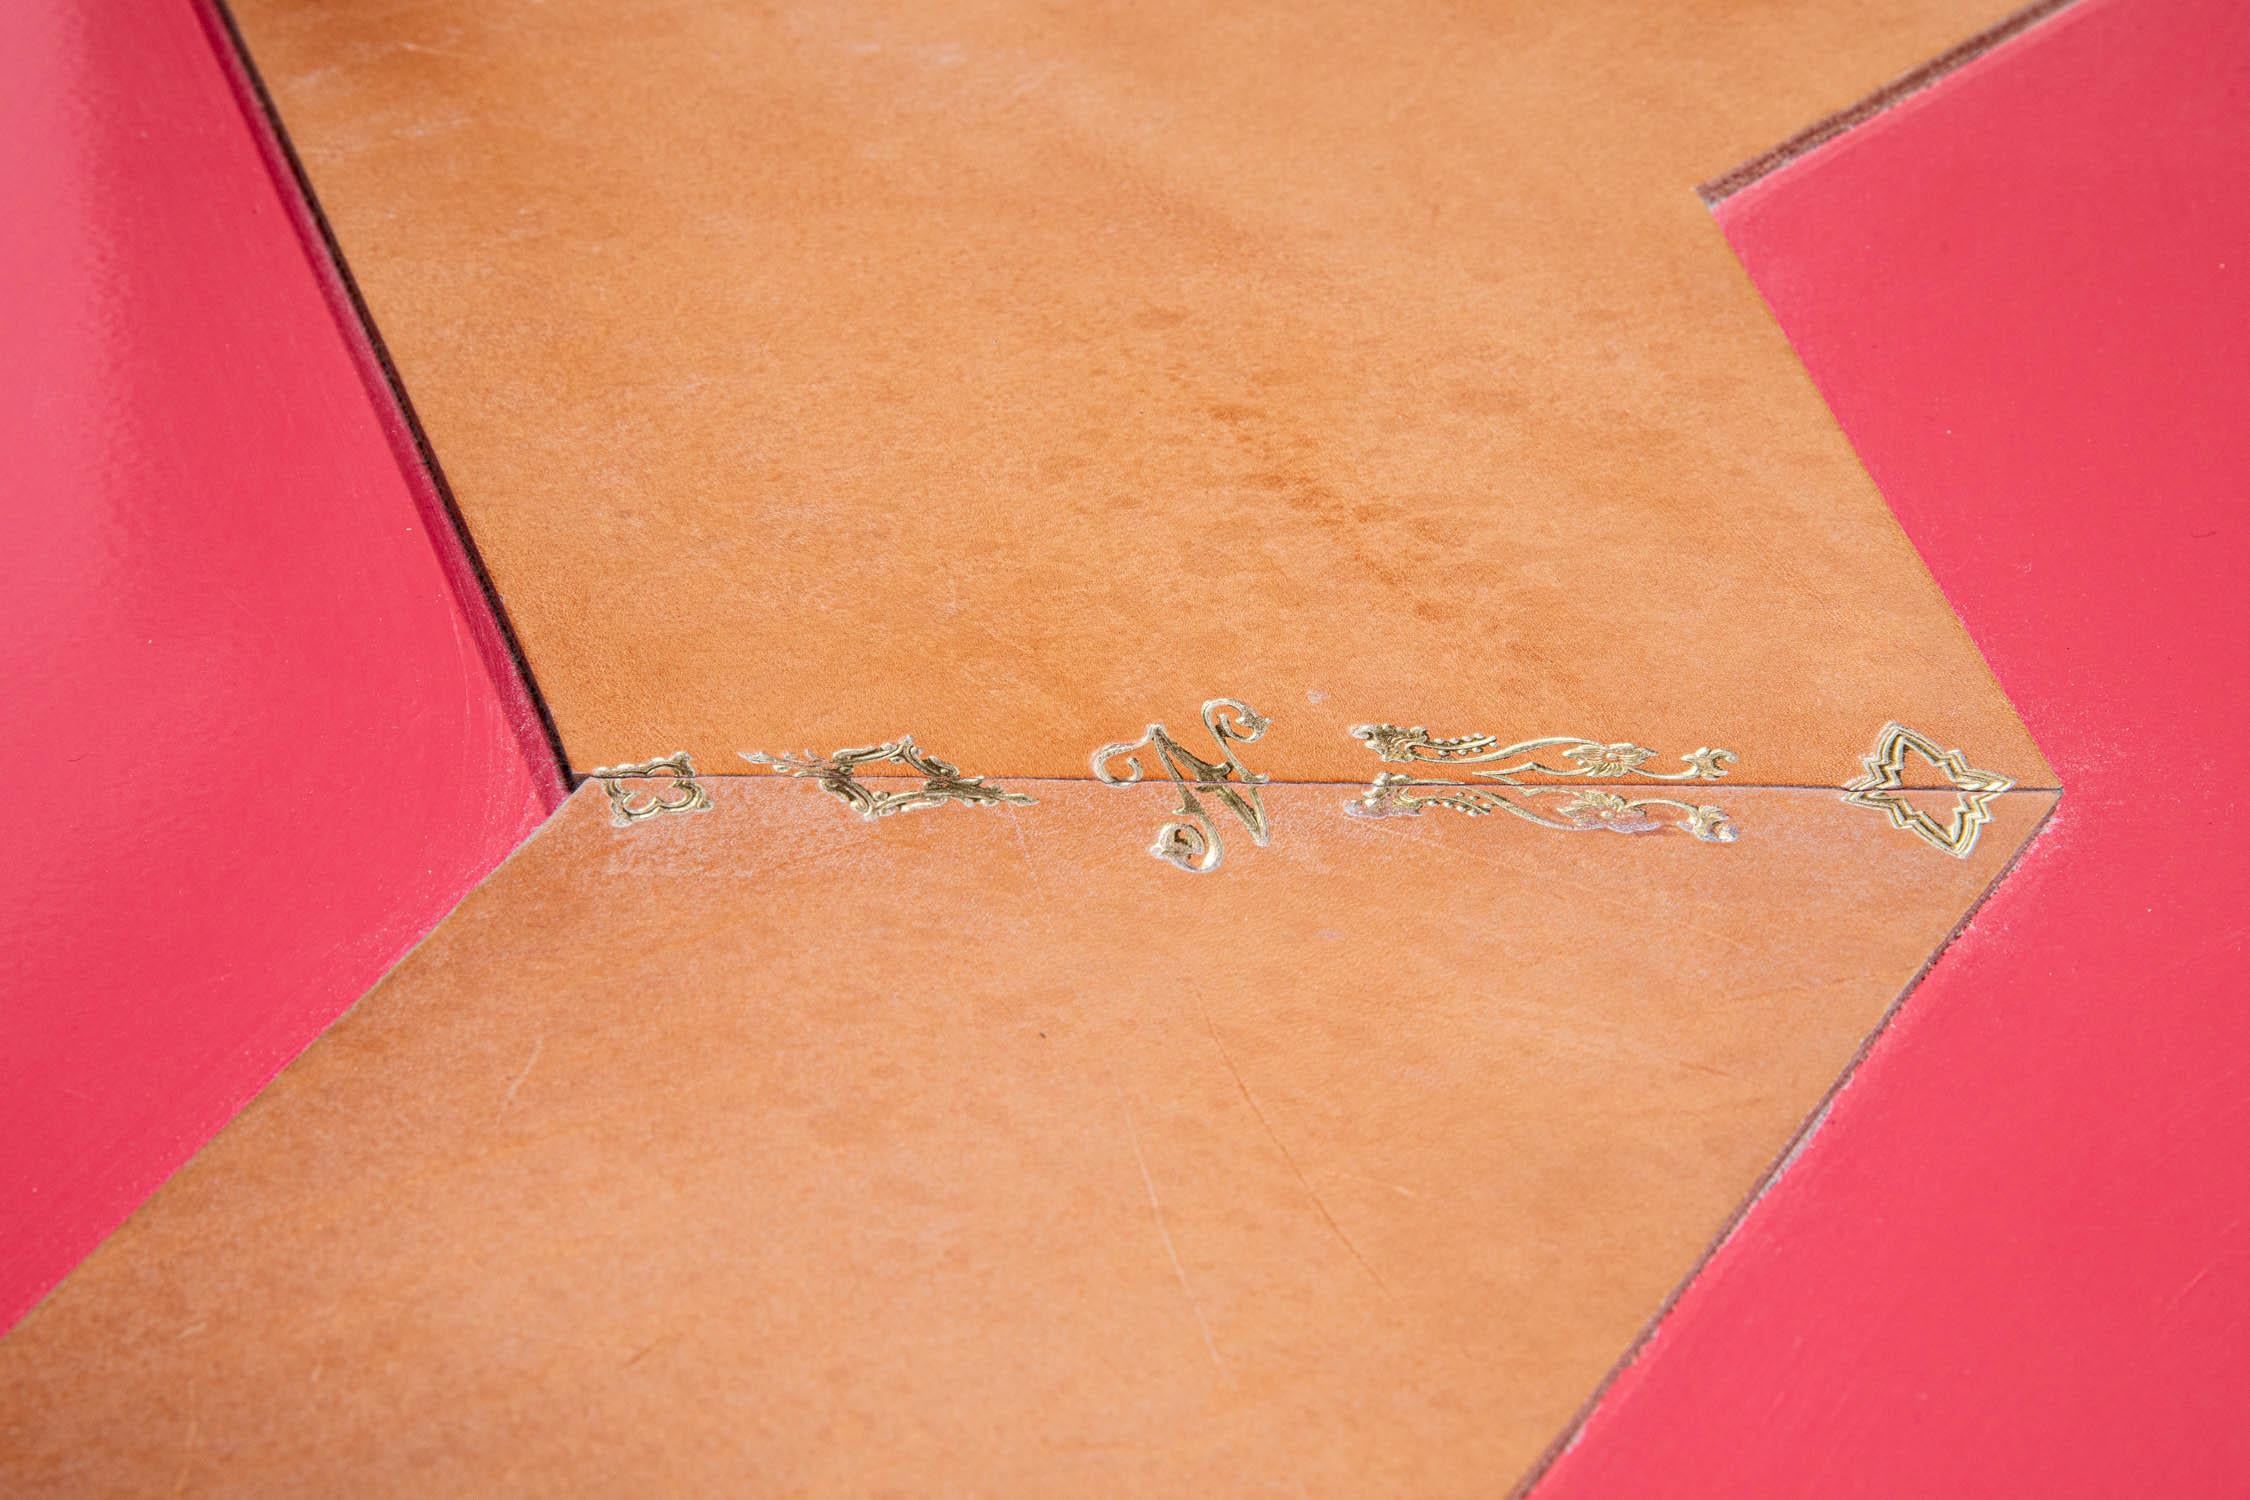 L'idée de Leather Time était un défi consistant à former une table dans une seule feuille de laiton. La couleur rose vif a été inspirée par le chewing-gum Malabar, ce qui donne une touche de fantaisie à son aspect légèrement industriel. Des morceaux